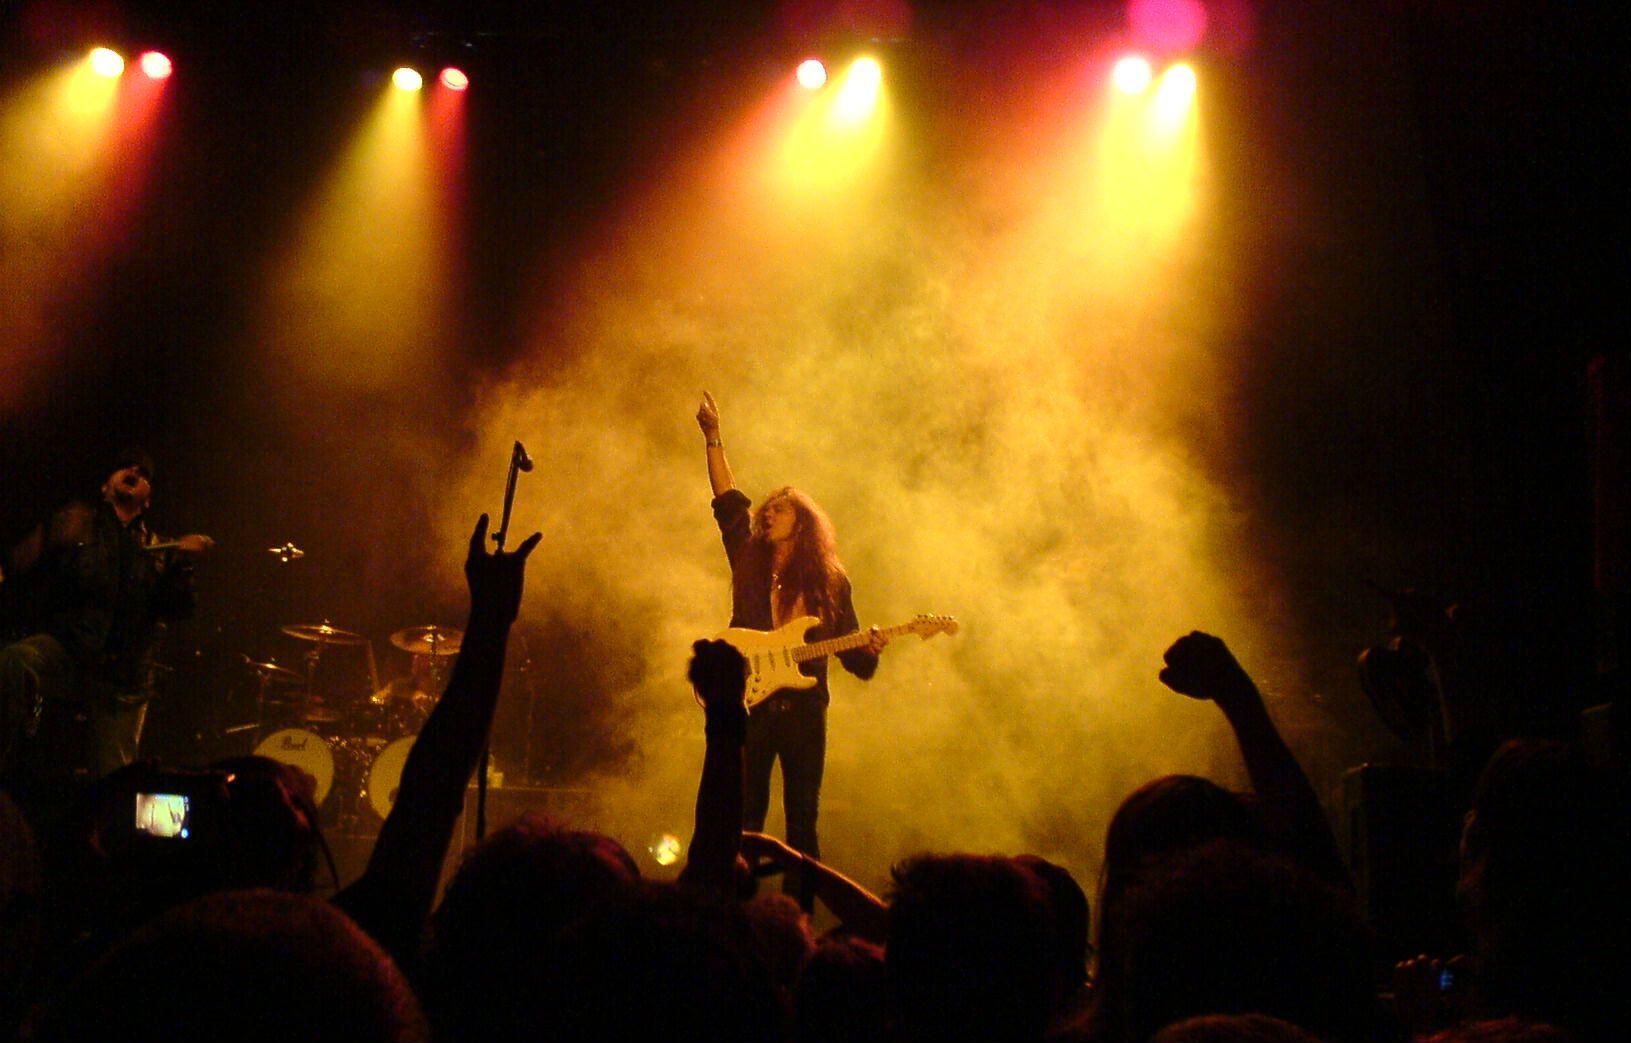 Yngwie malmsteen heavy metal hard rock guitars concerts wallpaper